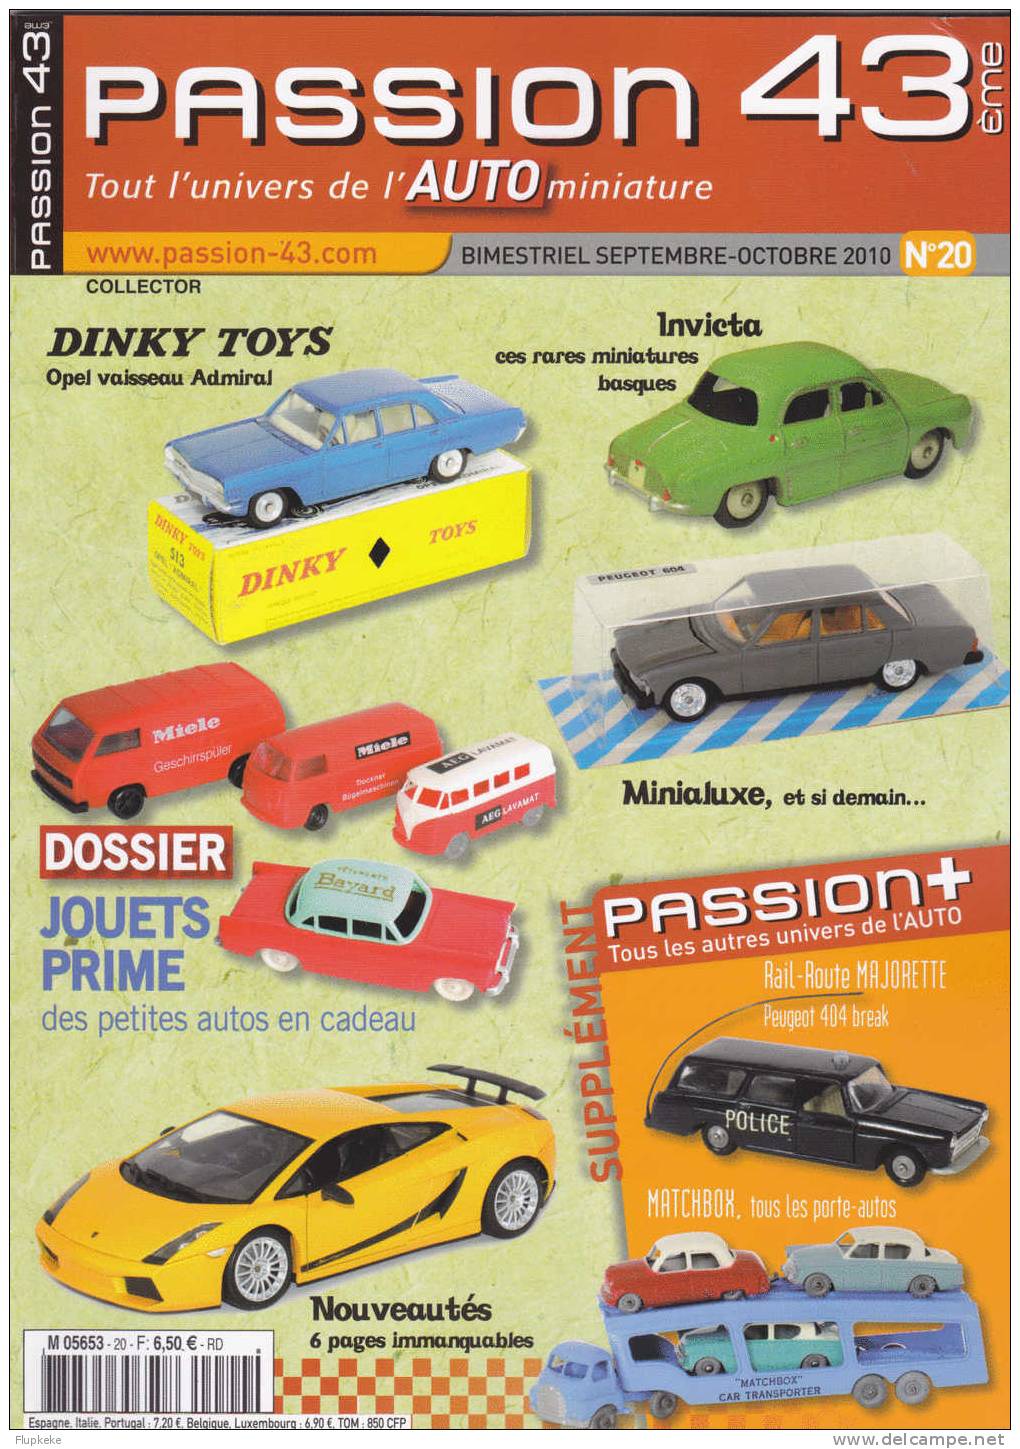 Passion 43 20 Septembre-octobre 2010 Dinky Toys Invicta Minialuxe Jouets Prime Des Petites Autos En Cadeau - Brocantes & Collections